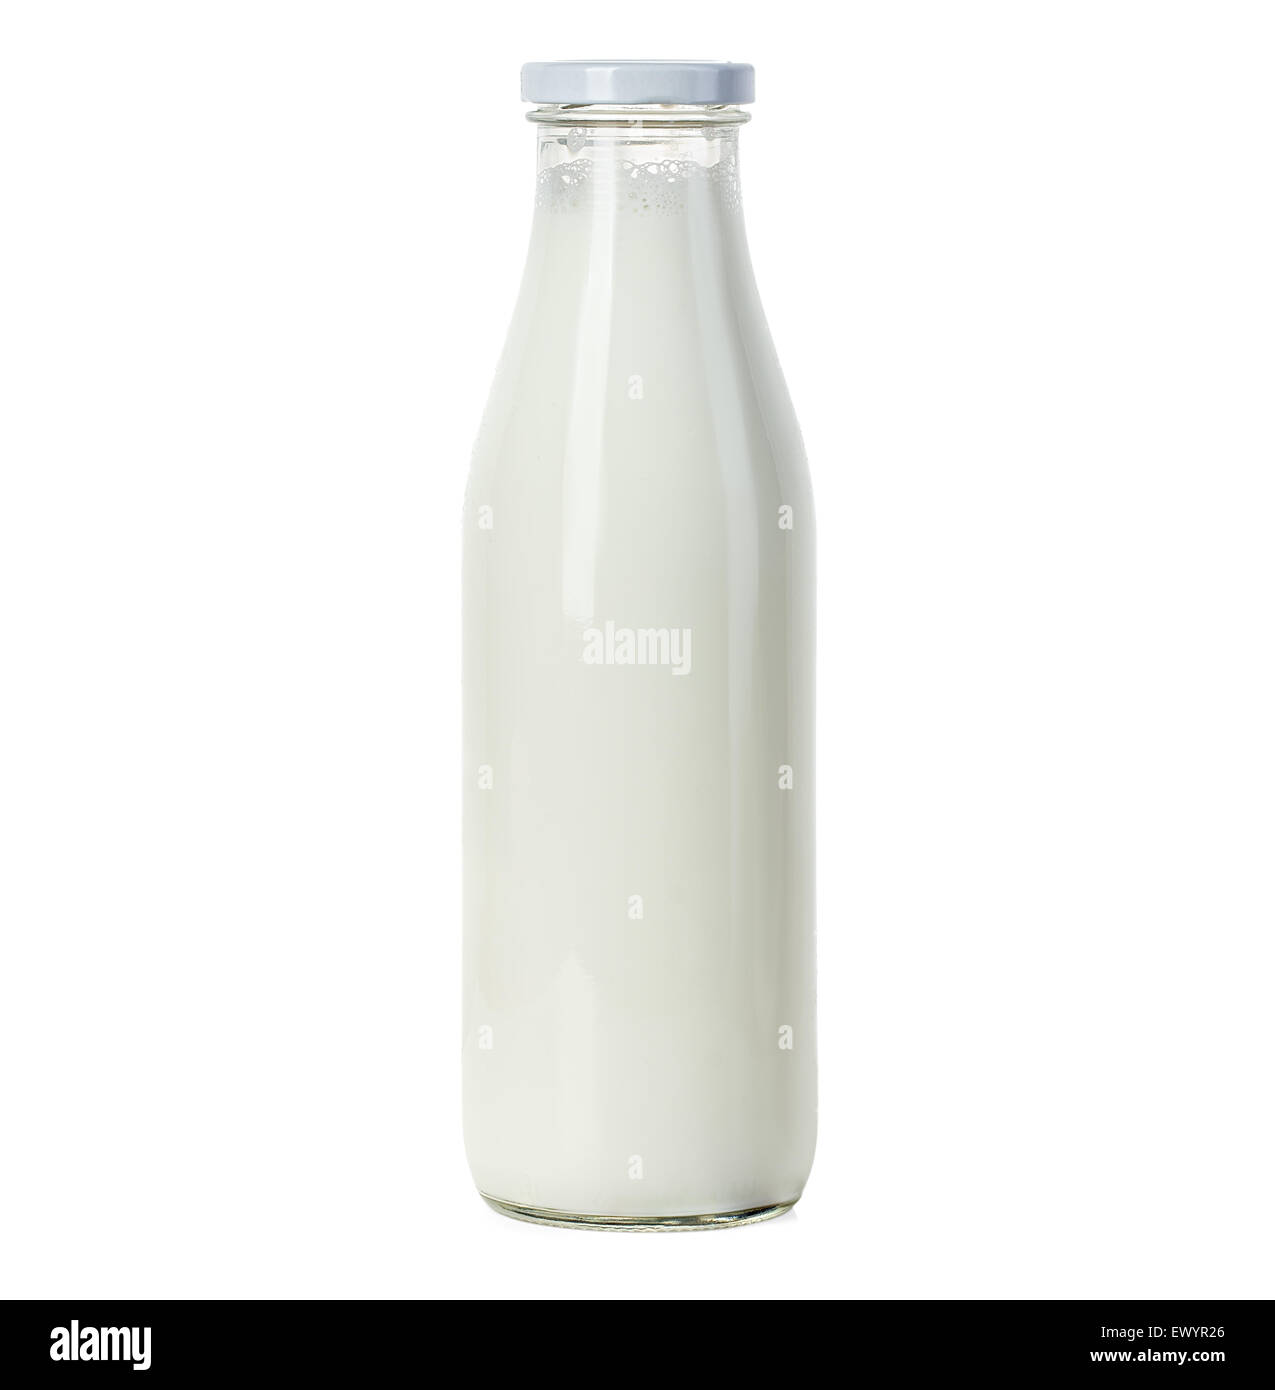 Bottle of milk isolated on white background Stock Photo